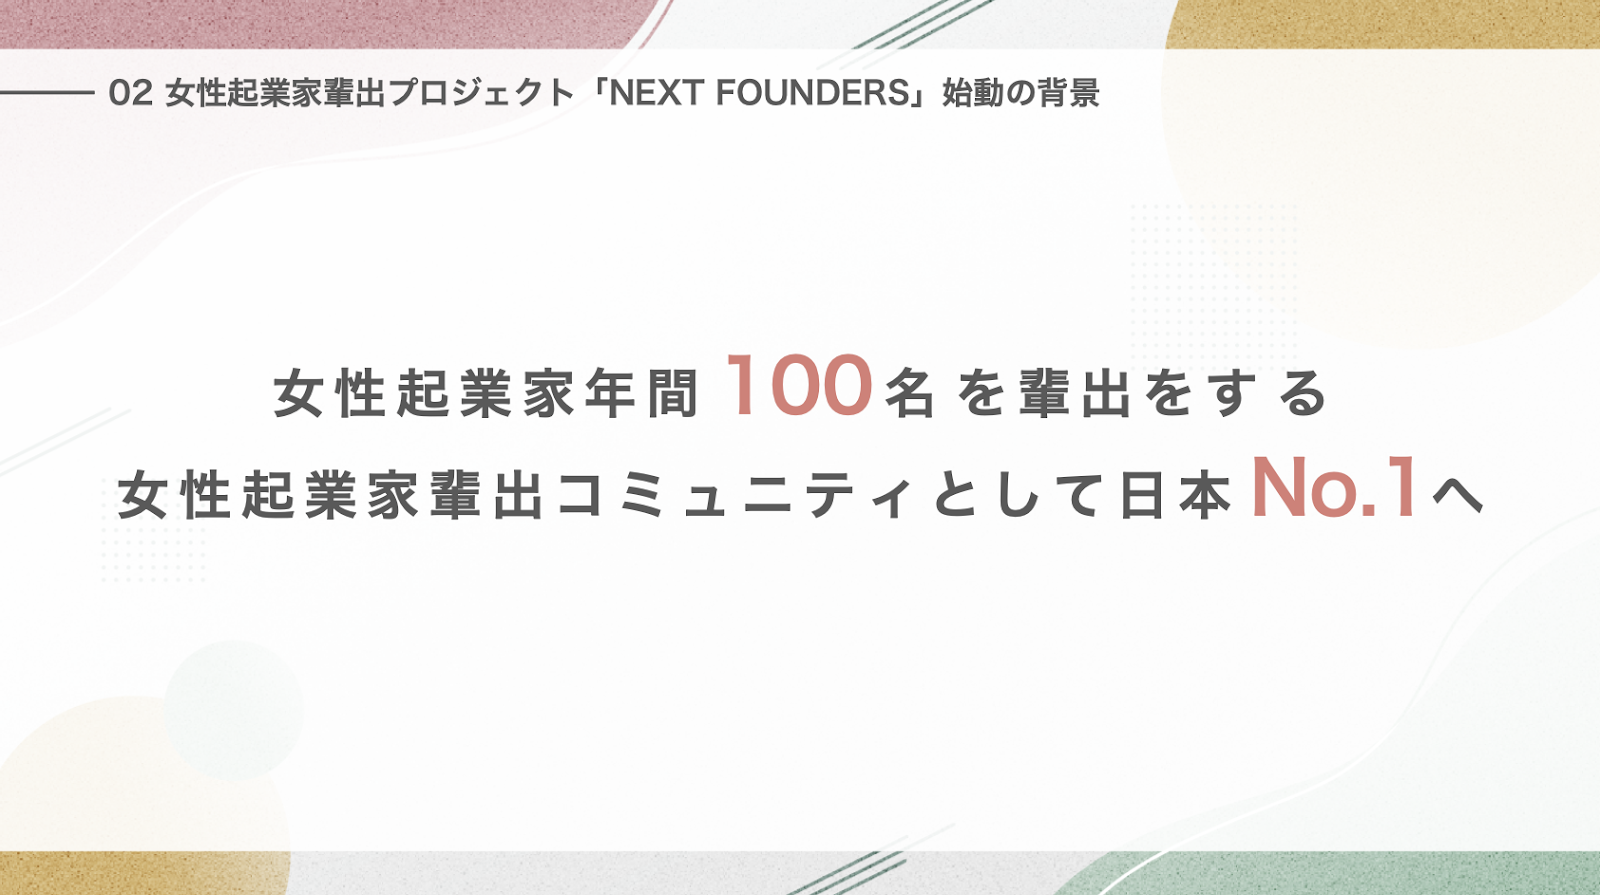 日本の女性起業家率の低い現状を打破するために、年間100人の女性起業家輩出を本気で目指し、日本最大の女性起業家輩出コミュニティに